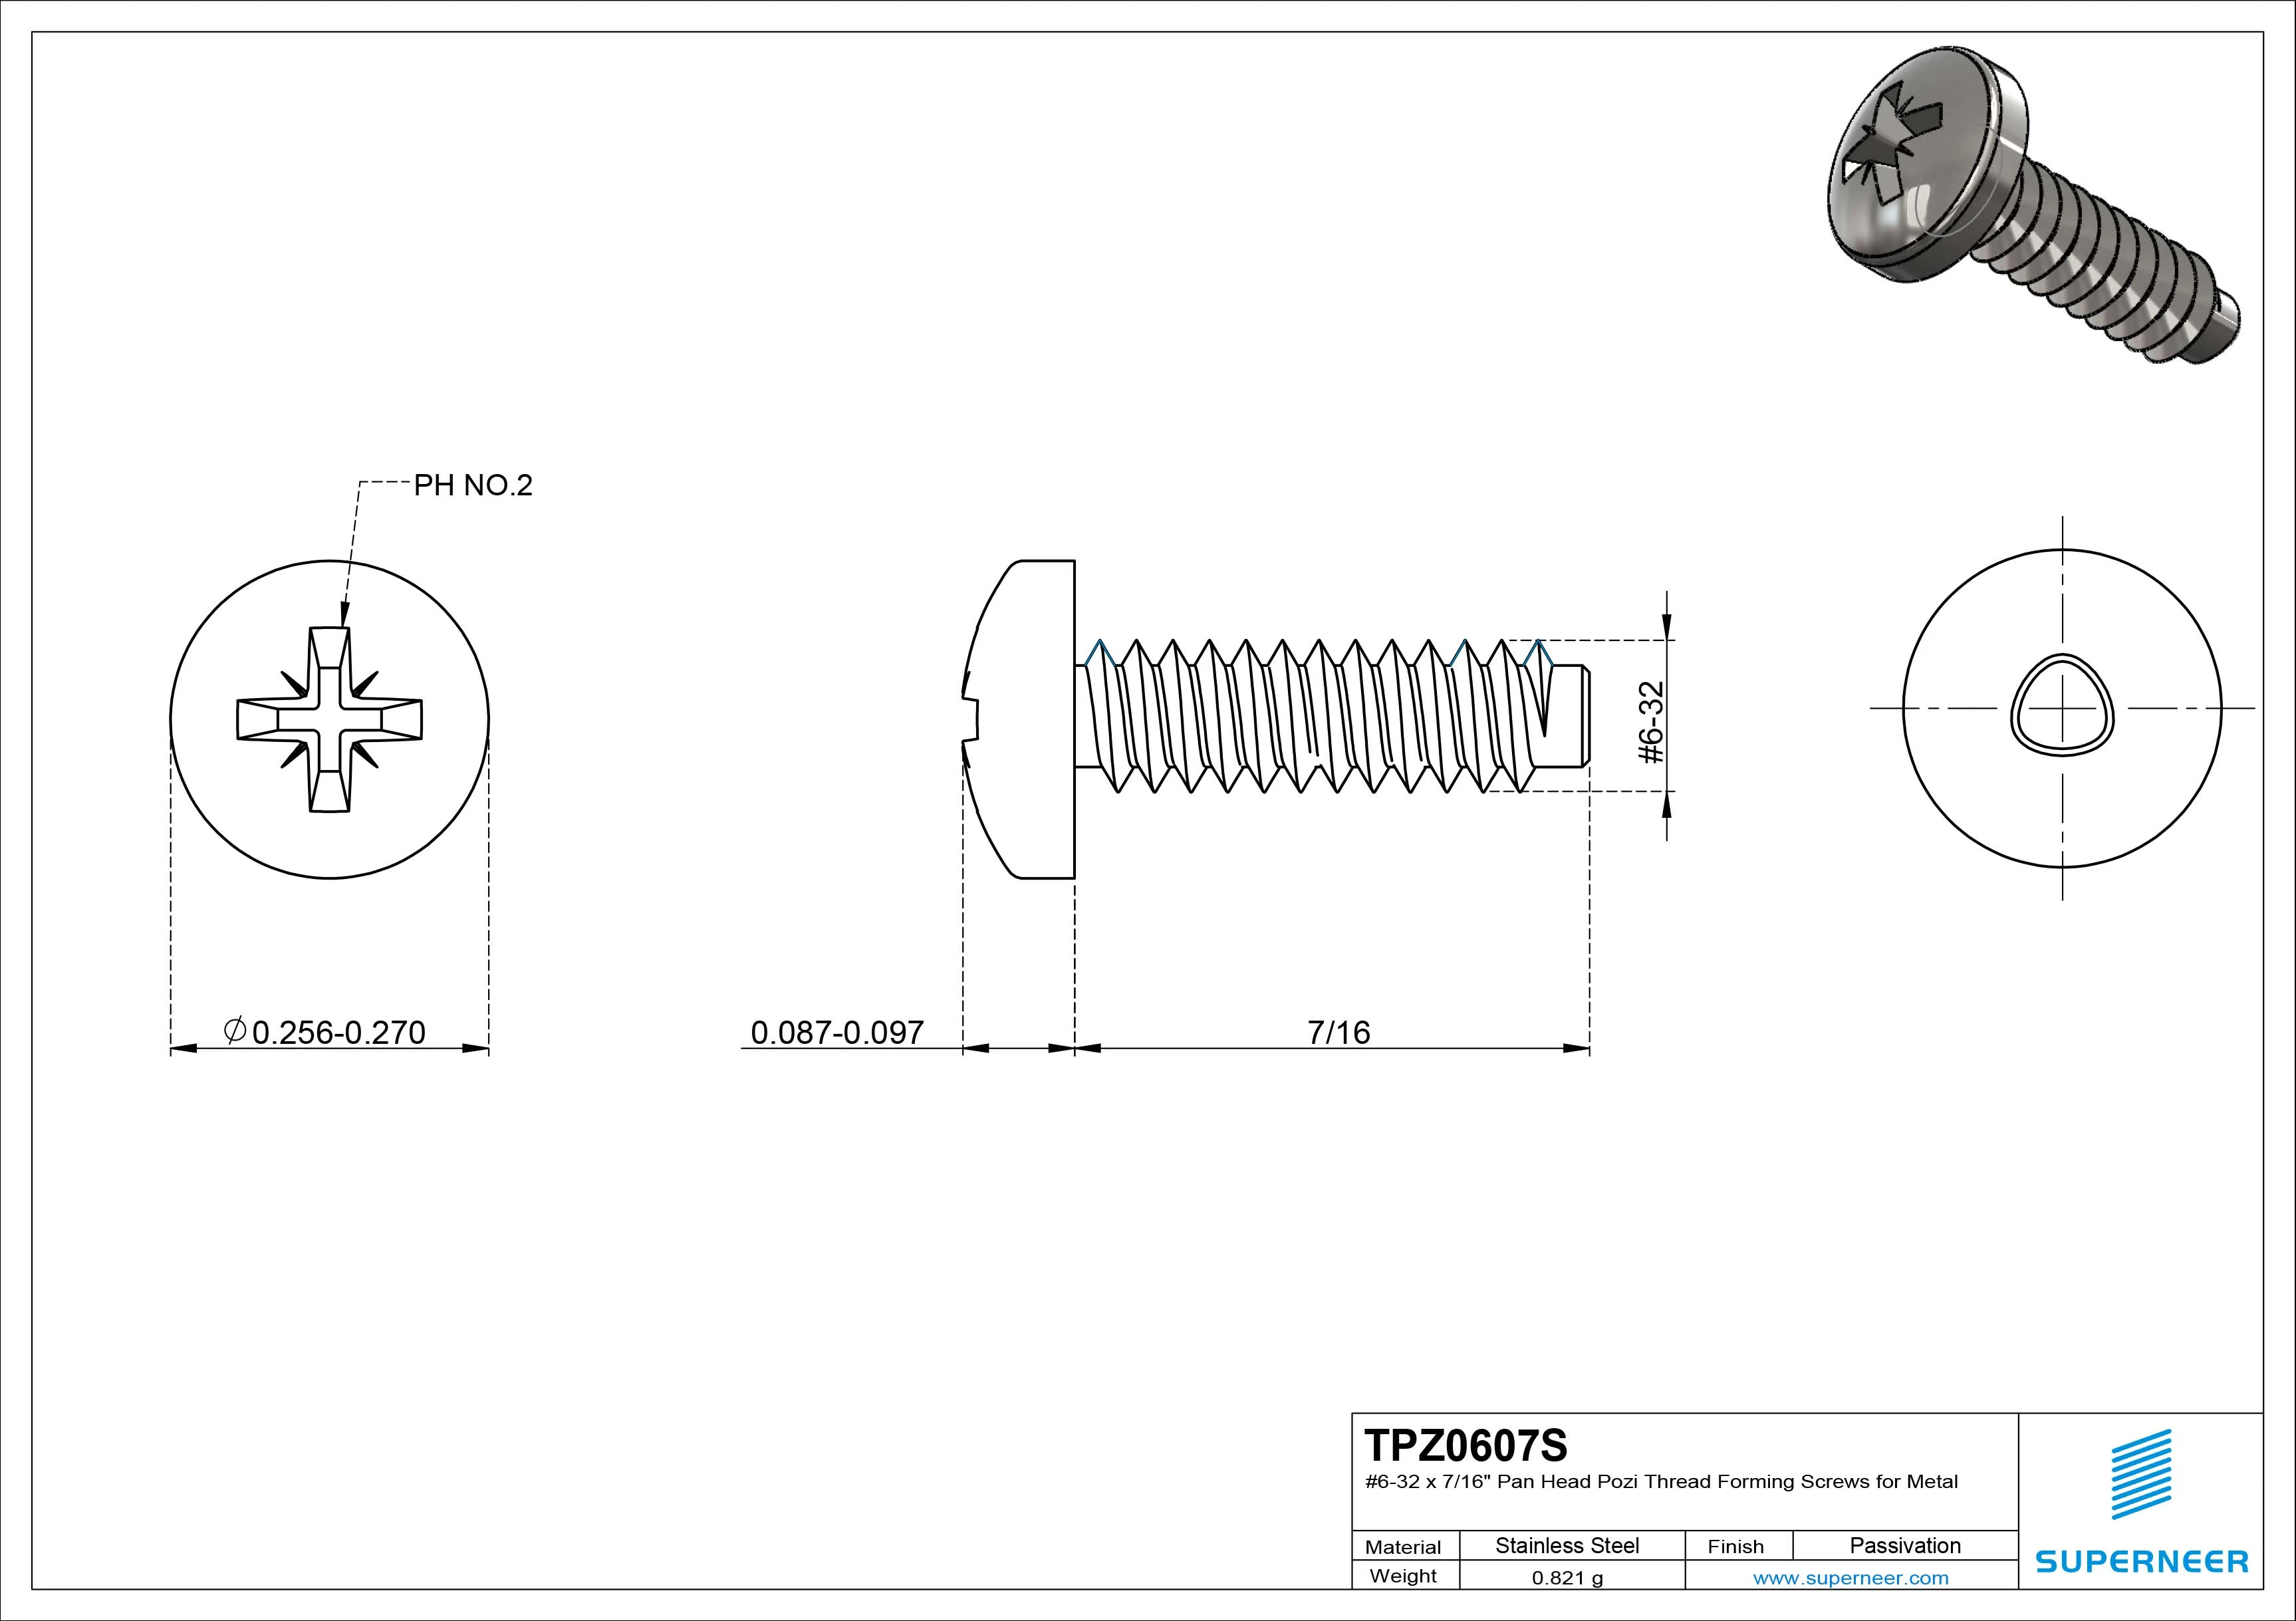 6-32 × 7/16 Pan Head Pozi Thread Forming  Screws for Metal  SUS304 Stainless Steel Inox